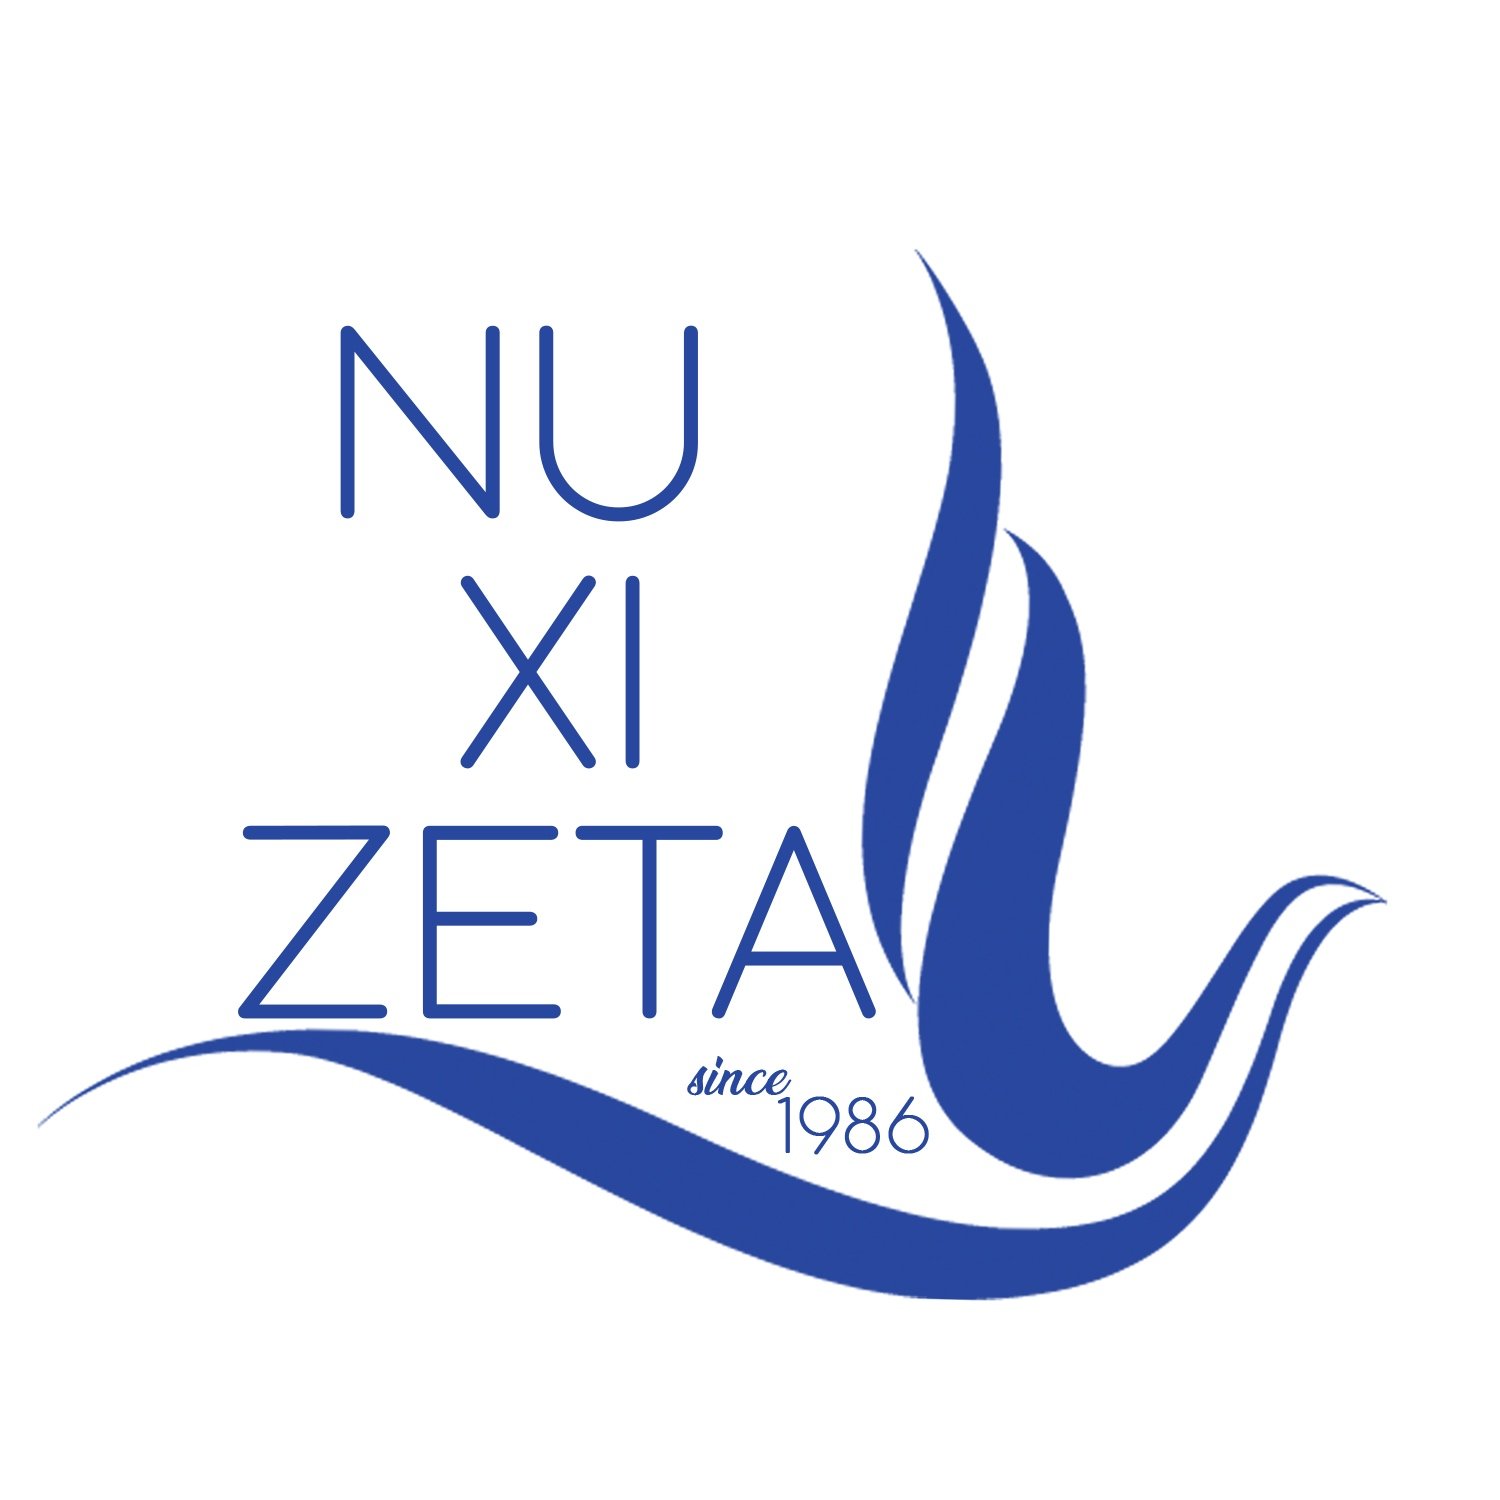 Nu Xi Zeta Chapter, Zeta Phi Beta Sorority, Inc.